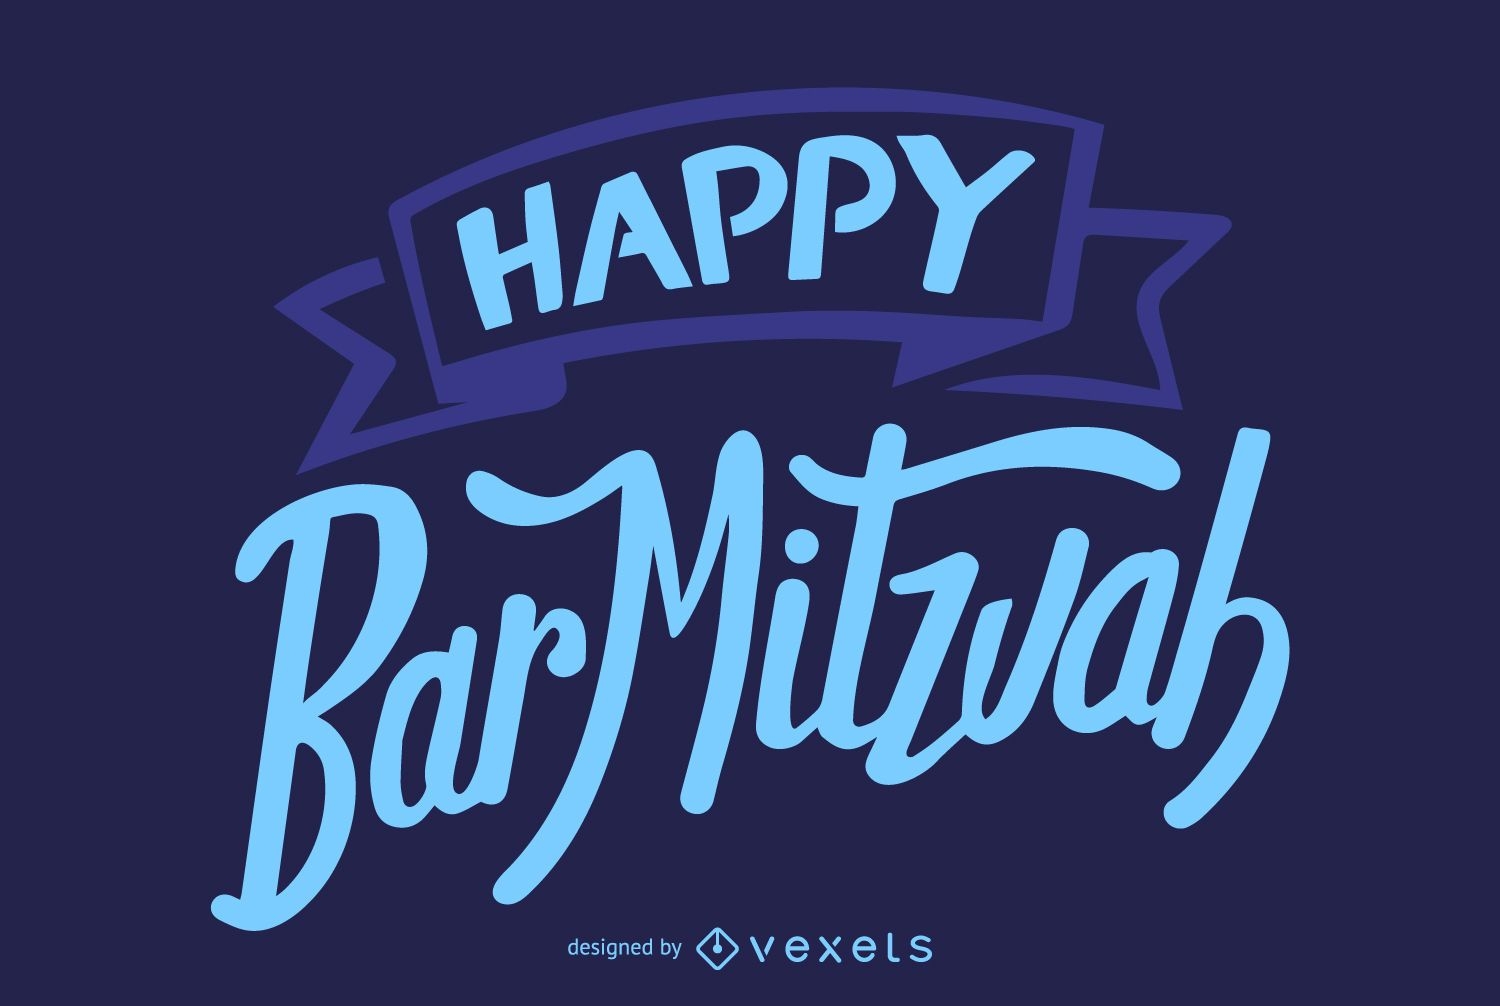 Letras do Happy Bar mitzvah